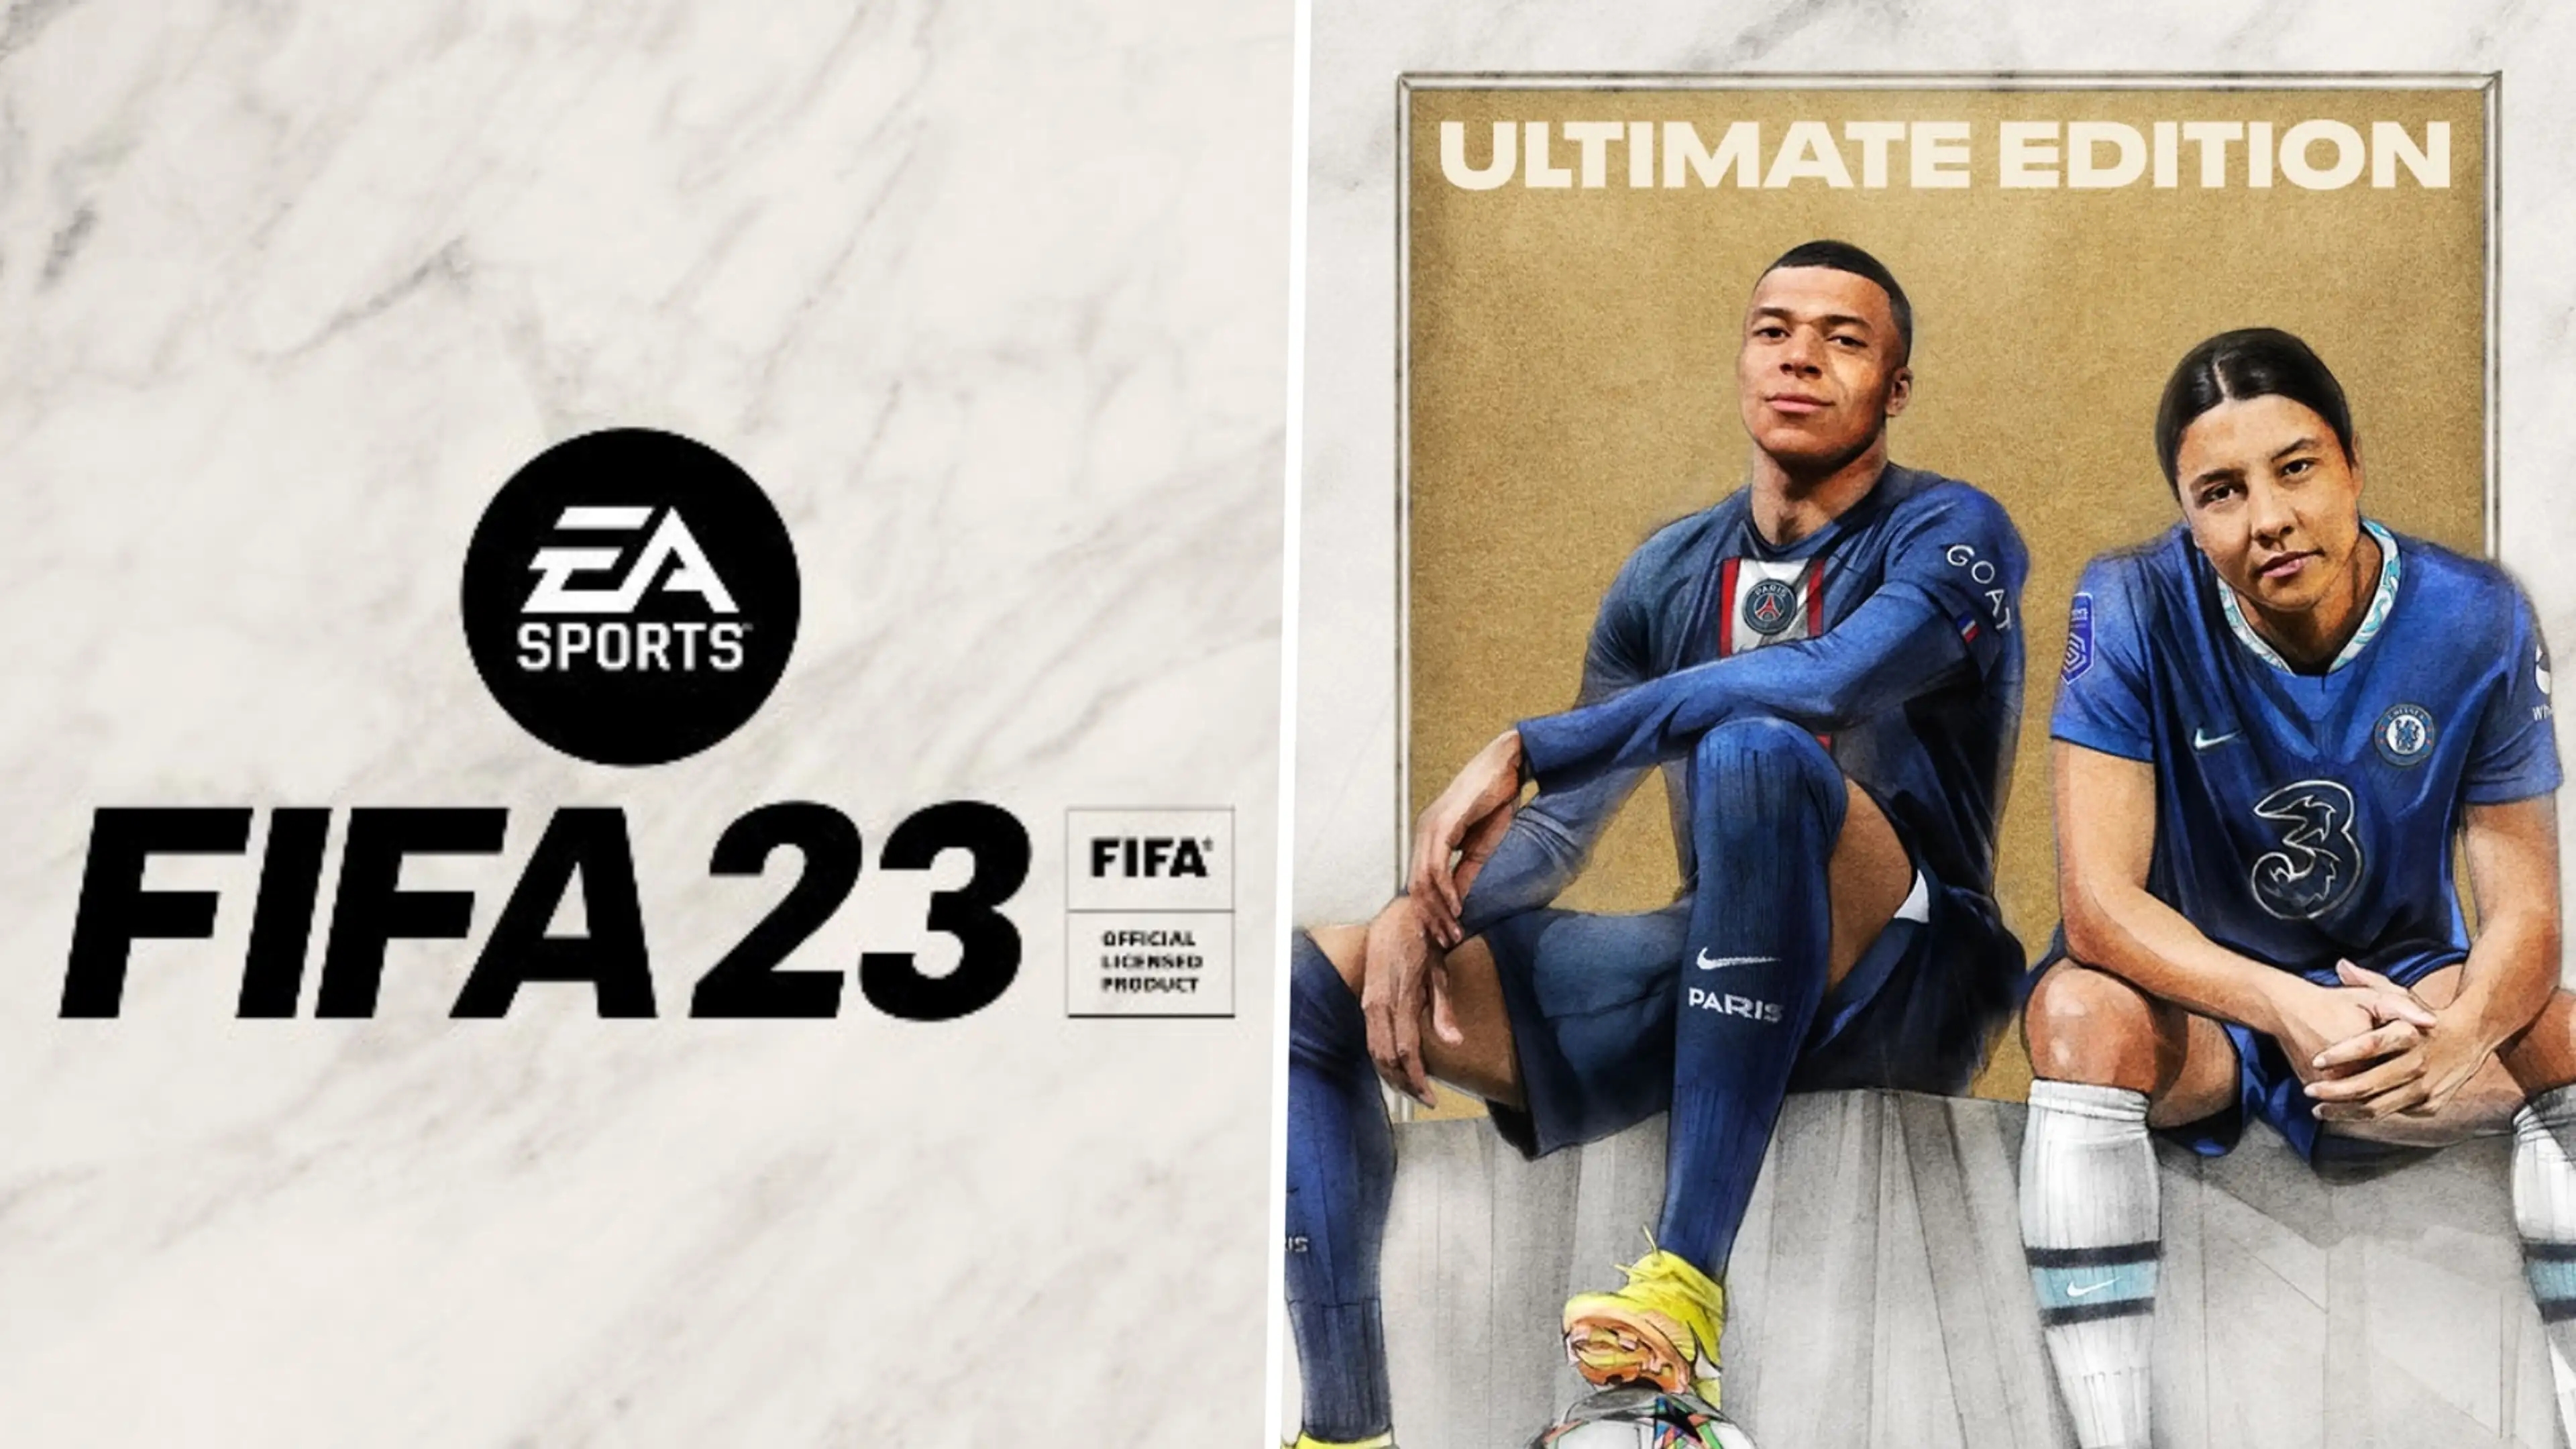 FIFA 23, Jogo PC